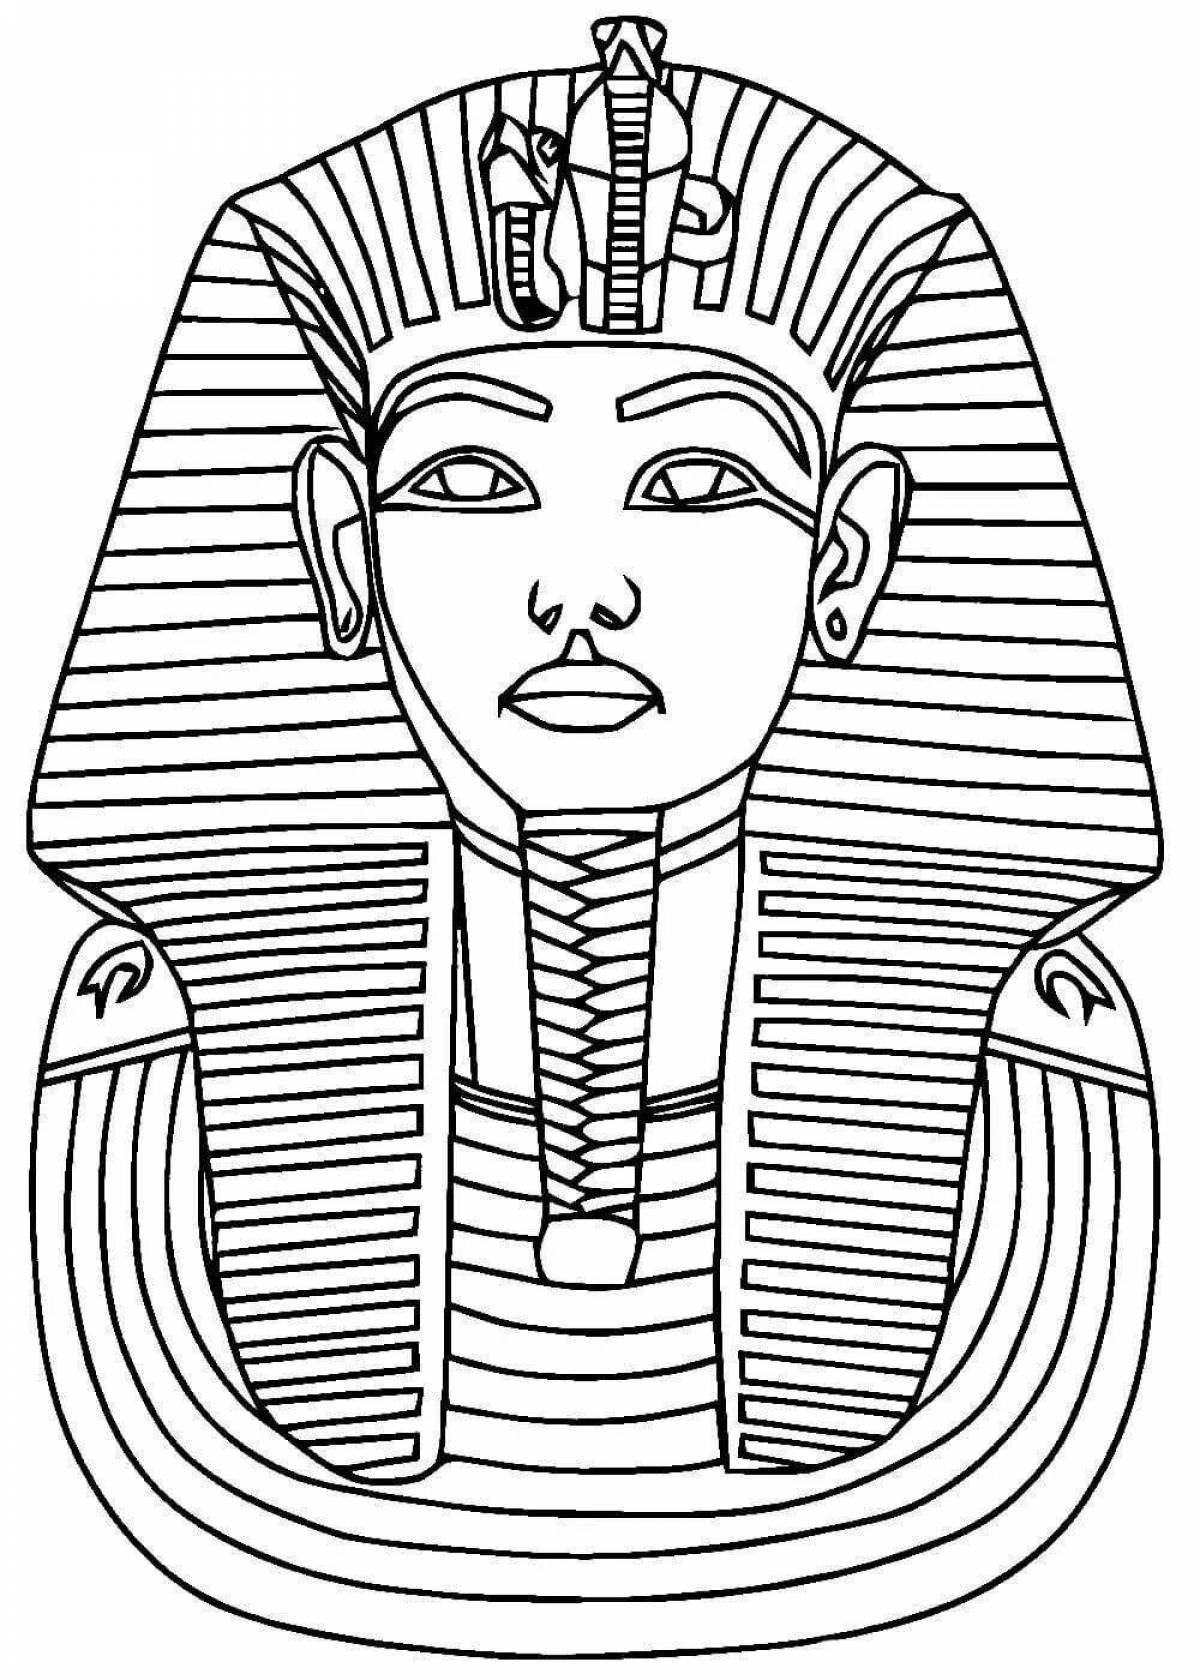 Фараона древнего египта #7